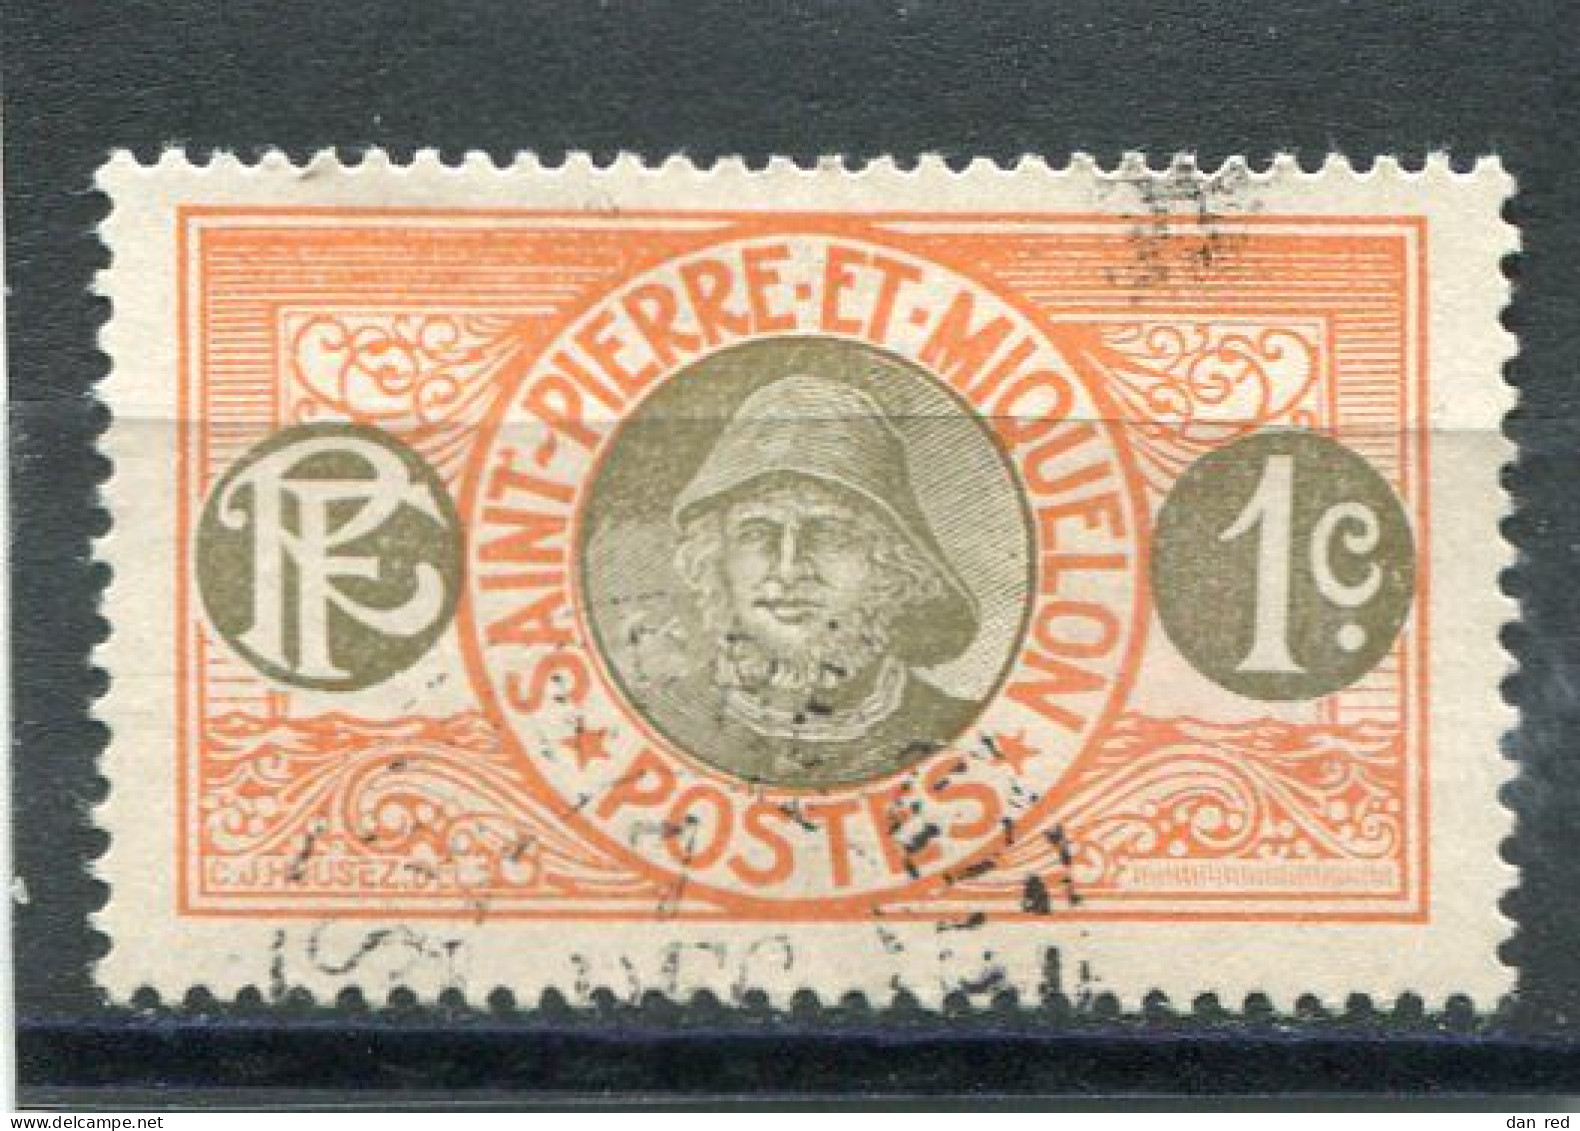 SAINT-PIERRE ET MIQUELON N° 78 (Y&T) (Oblitéré) - Used Stamps